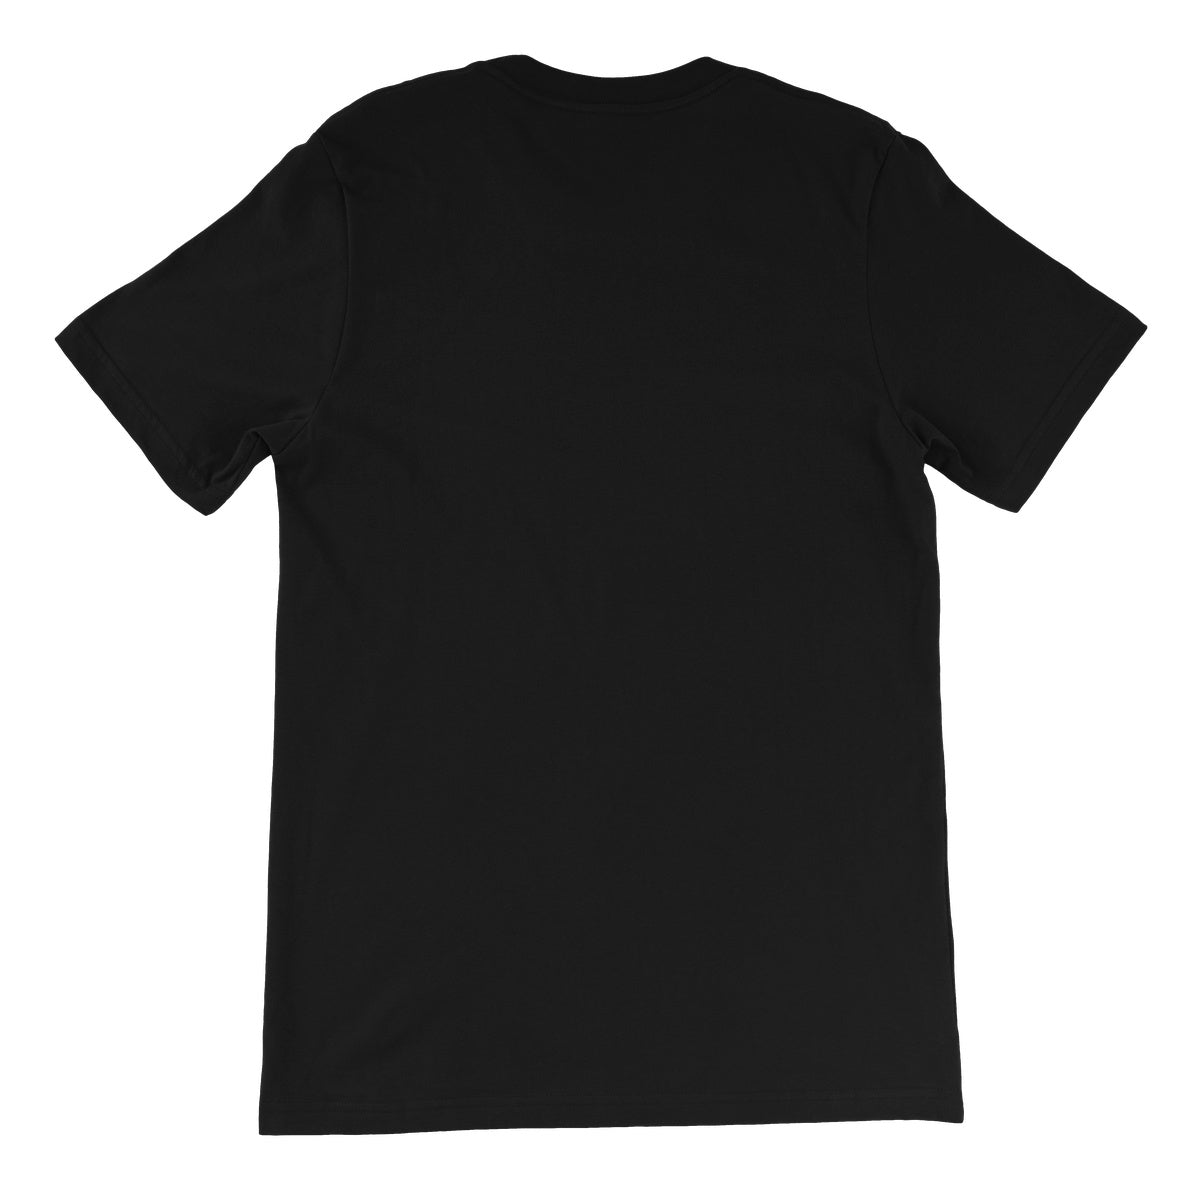 Doc Gallows Unisex Short Sleeve T-Shirt